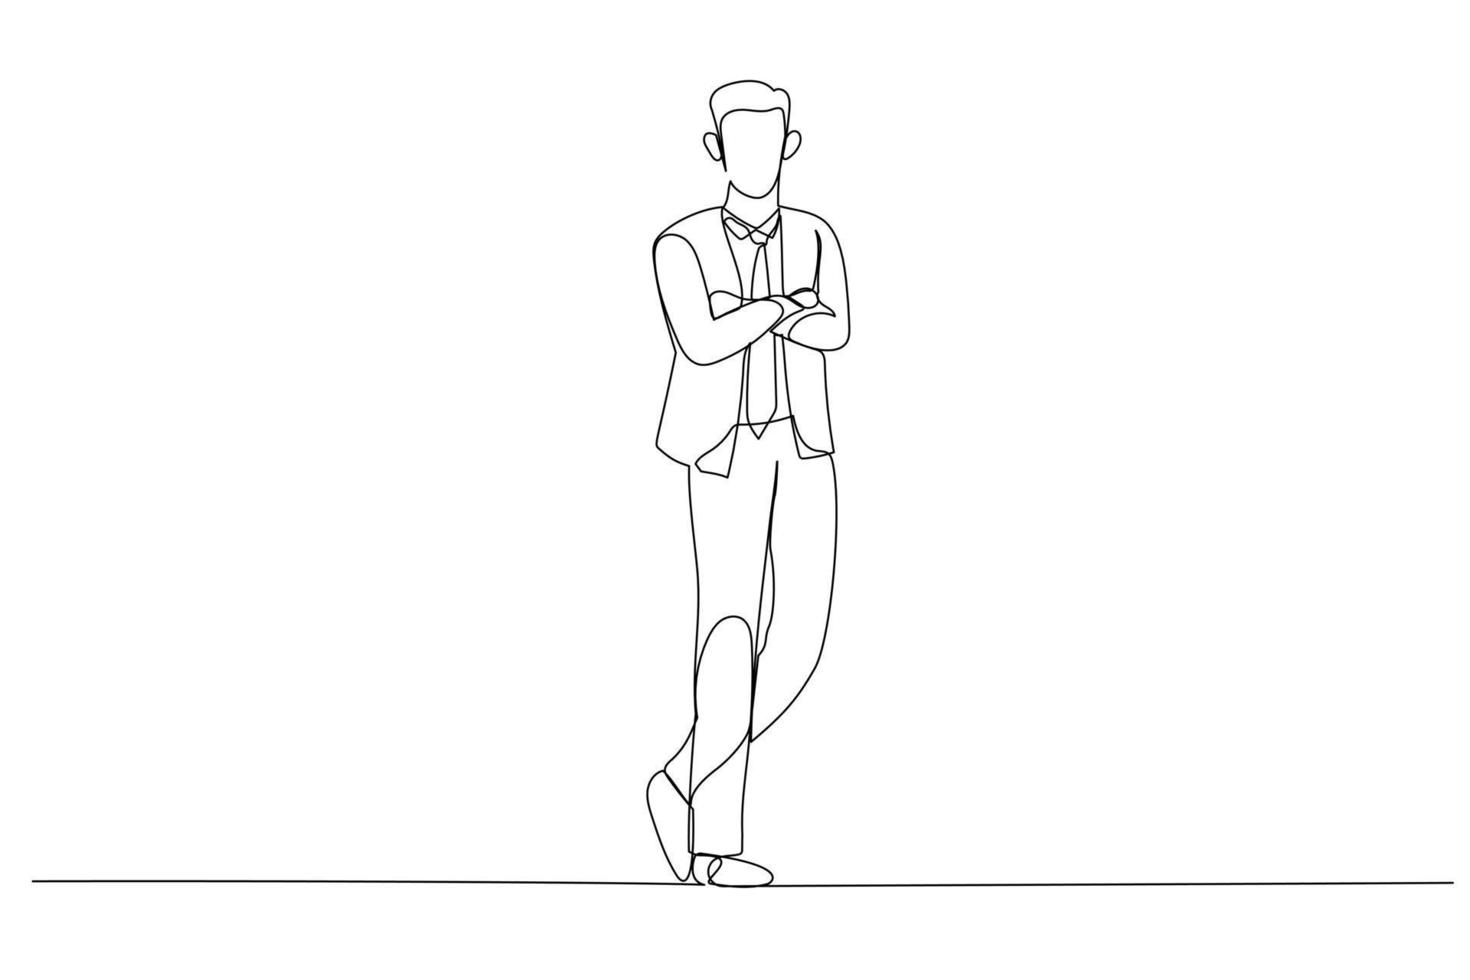 Zeichnung einer ehrgeizigen Geschäftsfrau, die kurz davor steht, die Leiter hinaufzuklettern, um die riesige Hand zu überwinden, die ihn stoppt. Metapher für die Überwindung von geschäftlichen Hindernissen, Hindernissen oder Schwierigkeiten. Kunststil mit einer durchgehenden Linie vektor